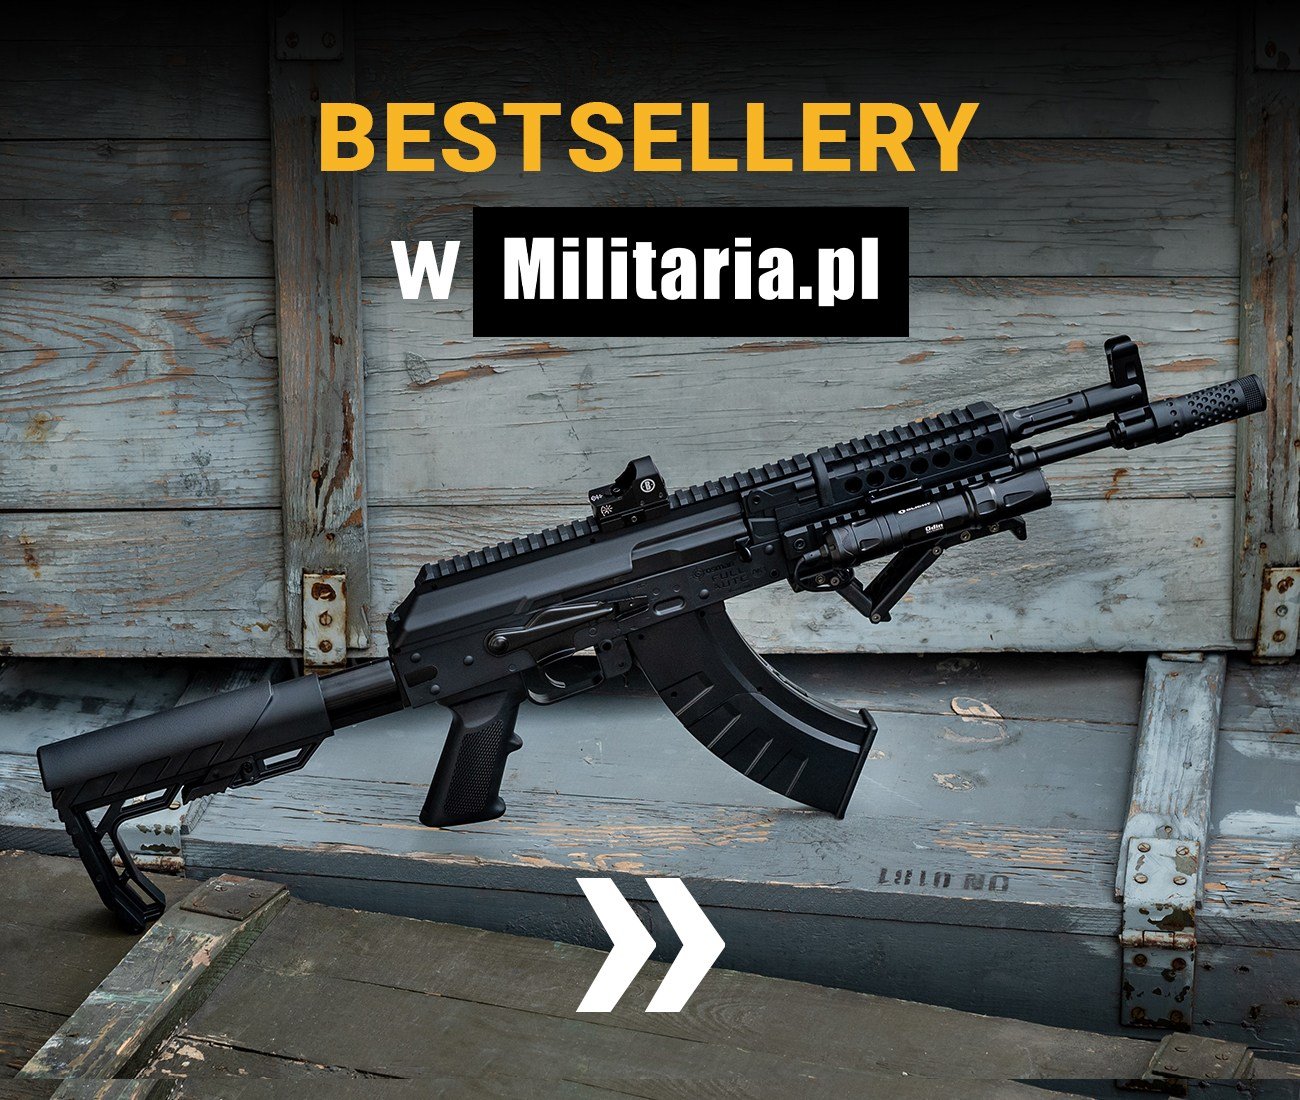 Bestsellery w Militaria.pl